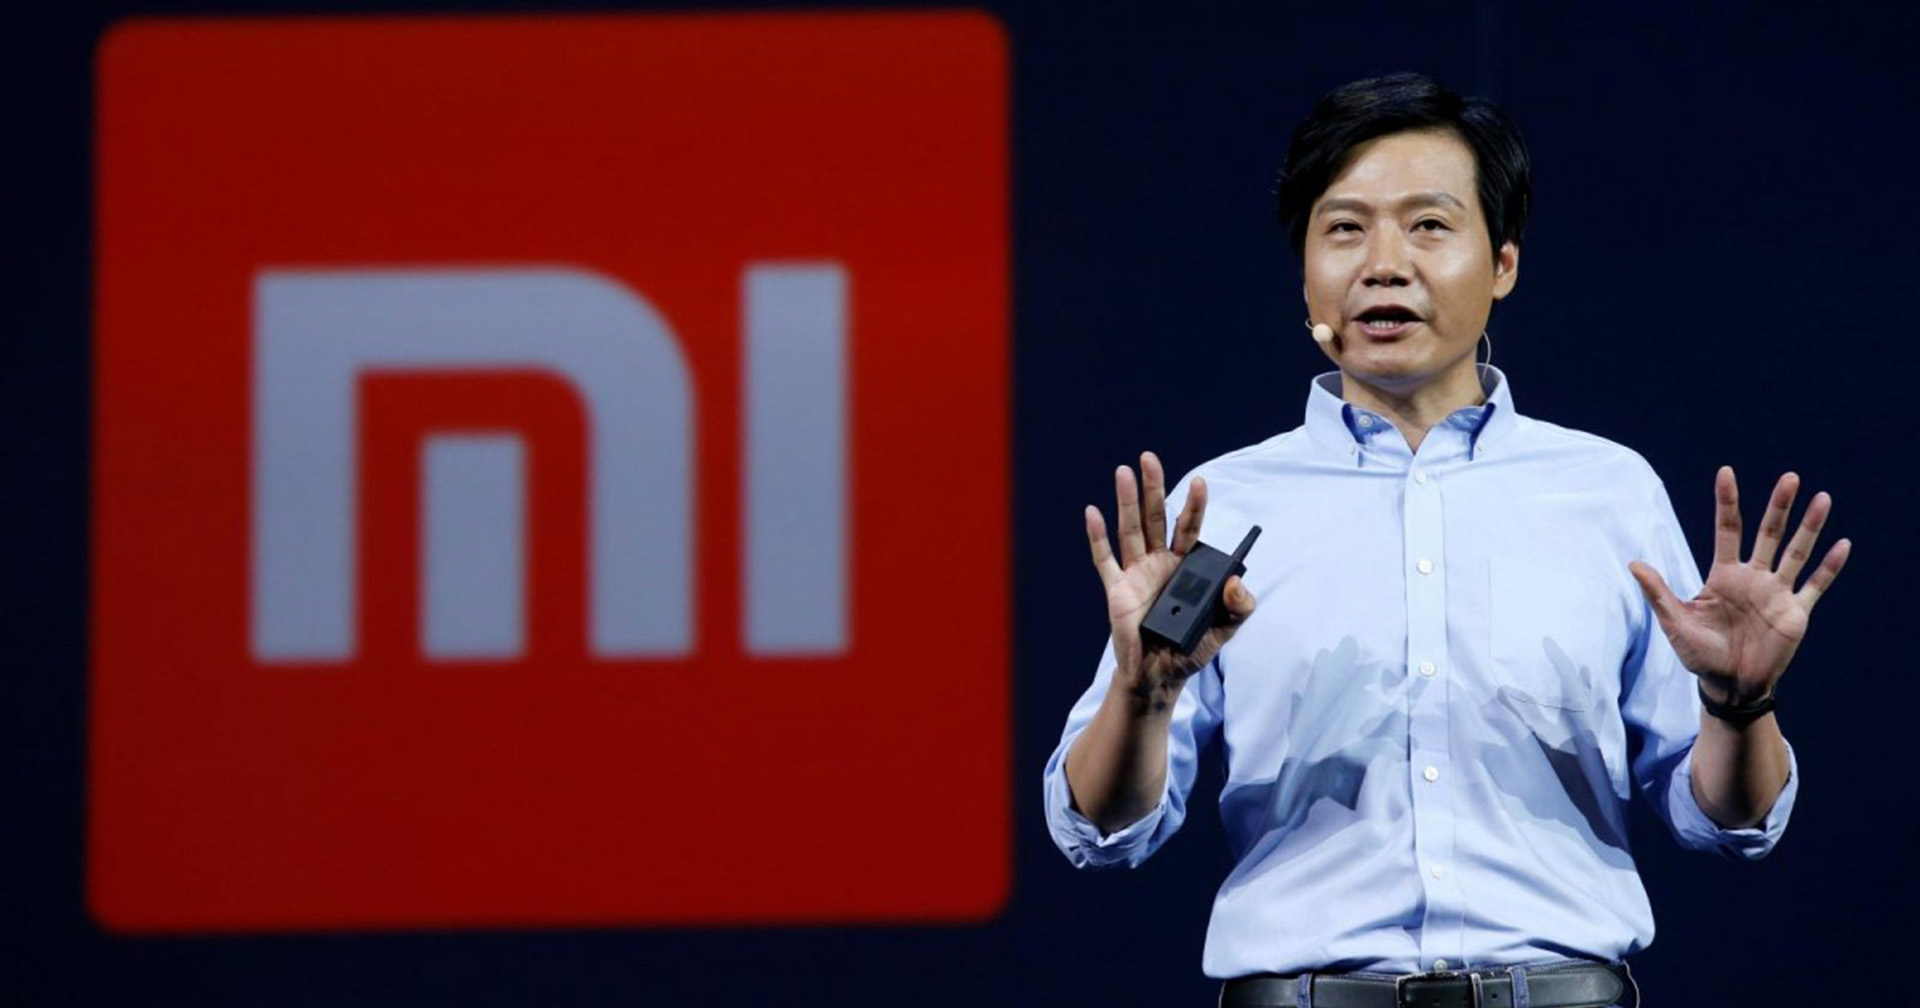 แผนลงทุน 10,000 ล้านเหรียญ ผลิตรถไฟฟ้าของ Xiaomi ถูกตรวจสอบโดยหน่วยงานของรัฐ